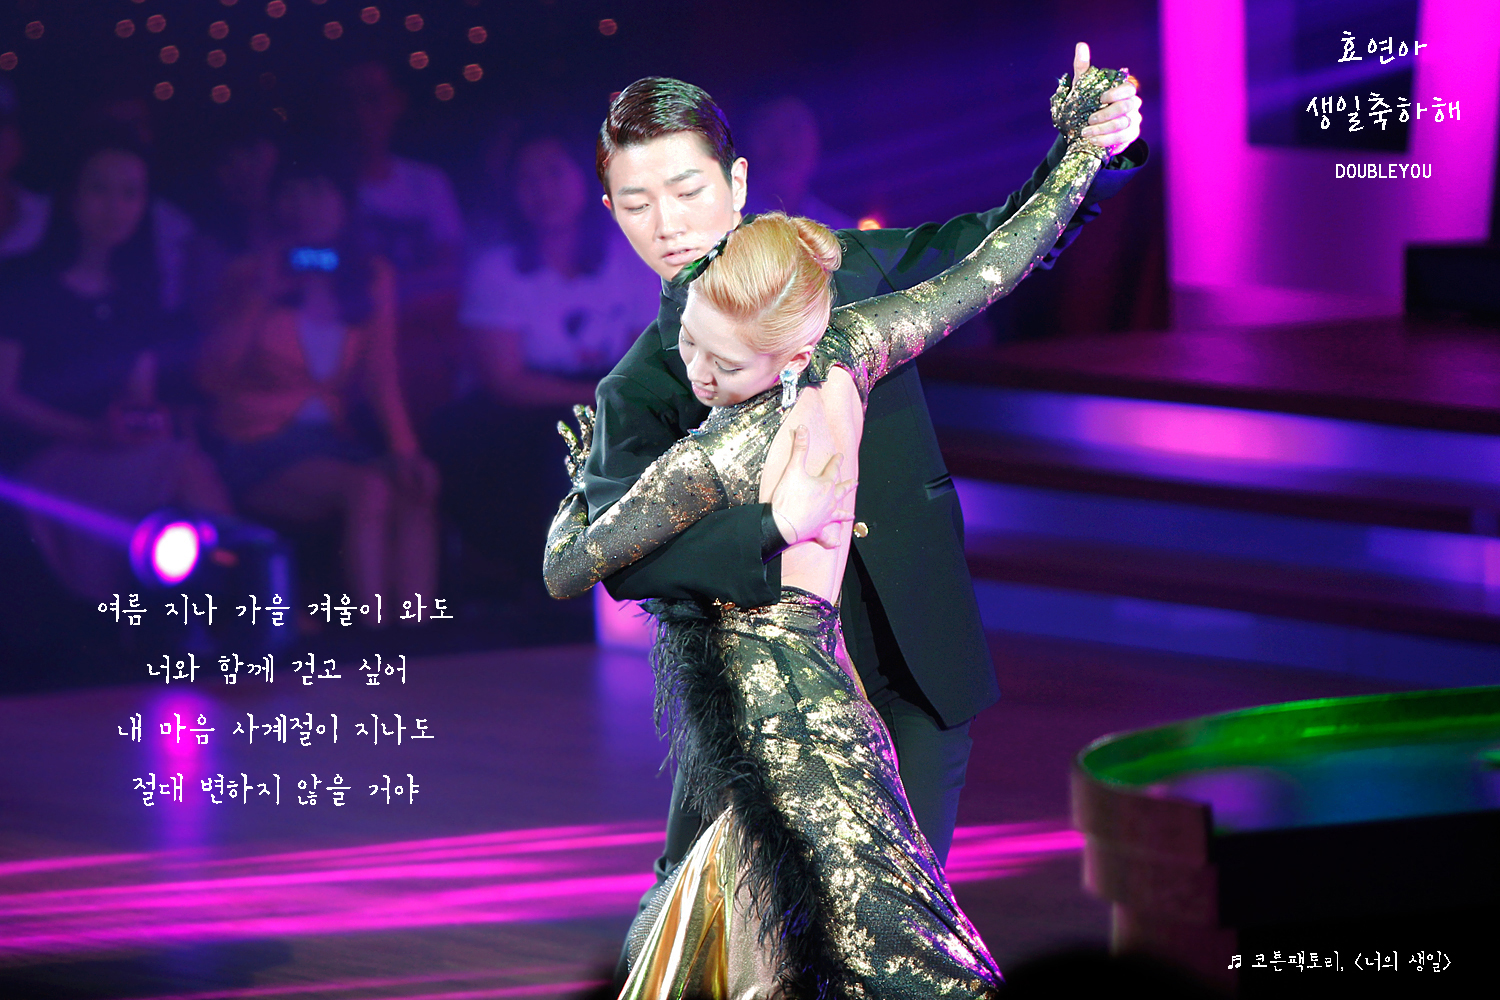 [OTHER][21-07-2012]Hình ảnh từ đêm chung kết "Dancing With The Star 2" tối qua của HyoYeon - Page 2 2560873E55FF92A90AB9DD